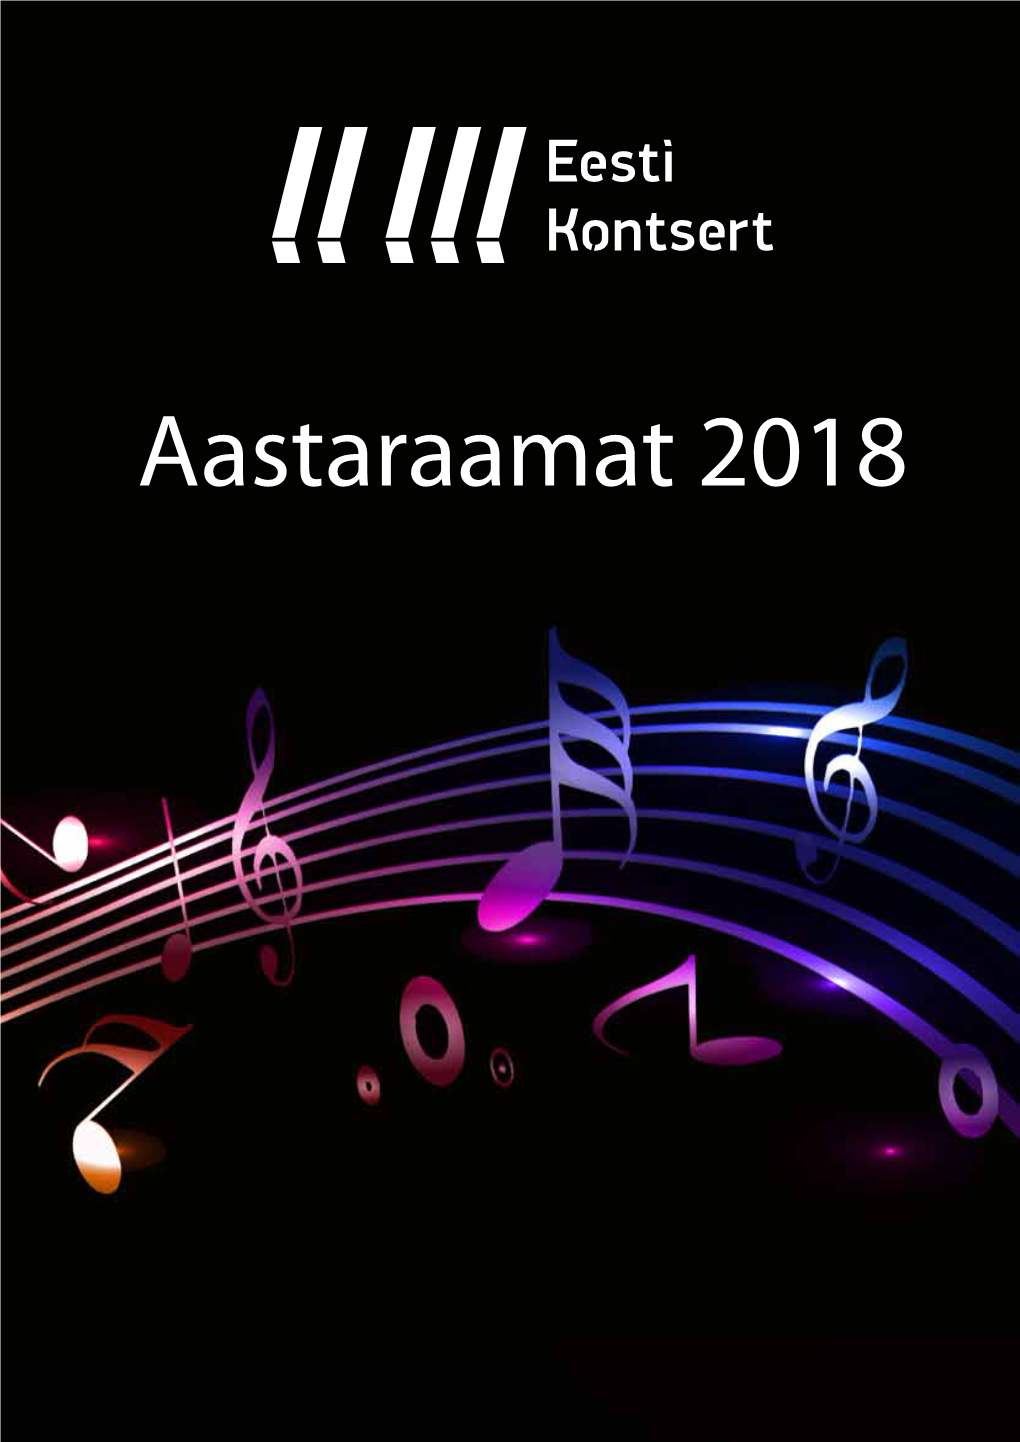 Eesti Kontserdi Aastaraamat 2018 5 Jüri Leiten SA Eesti Kontsert Juhatuse Liige Aasta Eesti Kontserdis